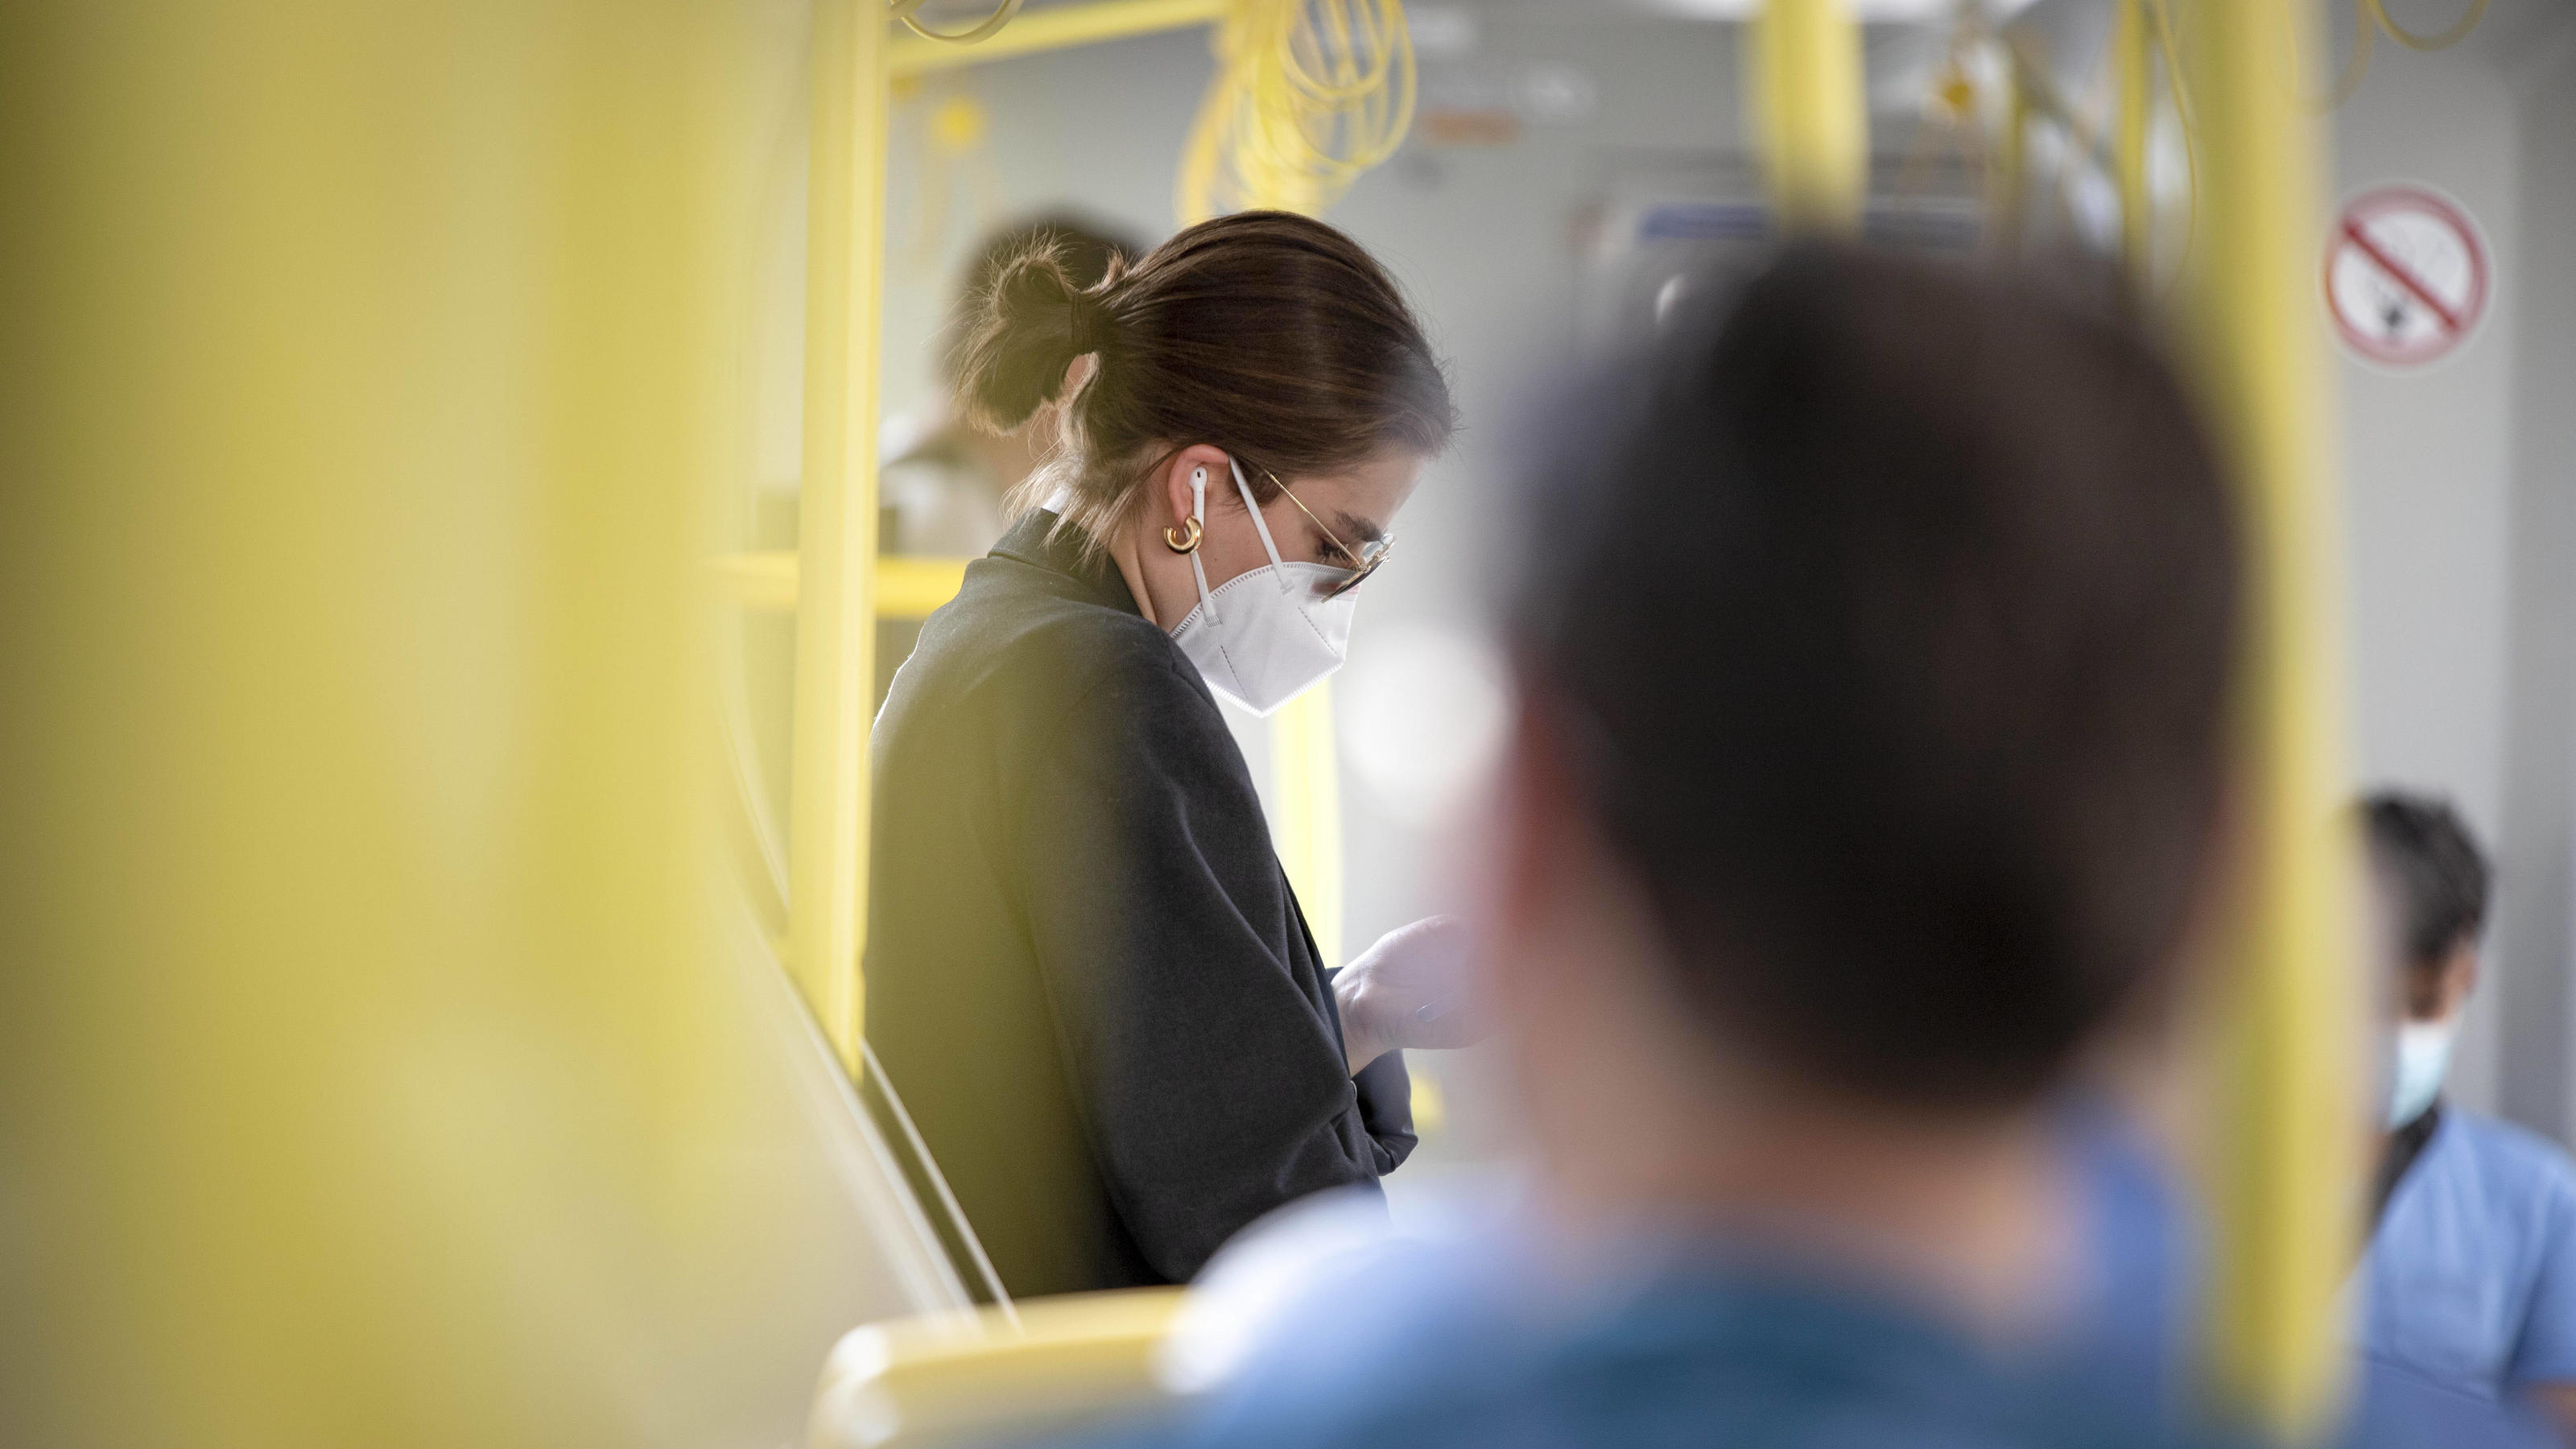  Coronavirus: Maskenpflicht in öffentlichen Verkehrsmitteln *** Corona virus: Mandatory facemask in public transport Aufgrund des Coronavirus ist das Tragen eines Mund-Nasen-Schutzes in den öffentlichen Verkehrsmitteln verpflichtend. Im Bild: Fahrgas